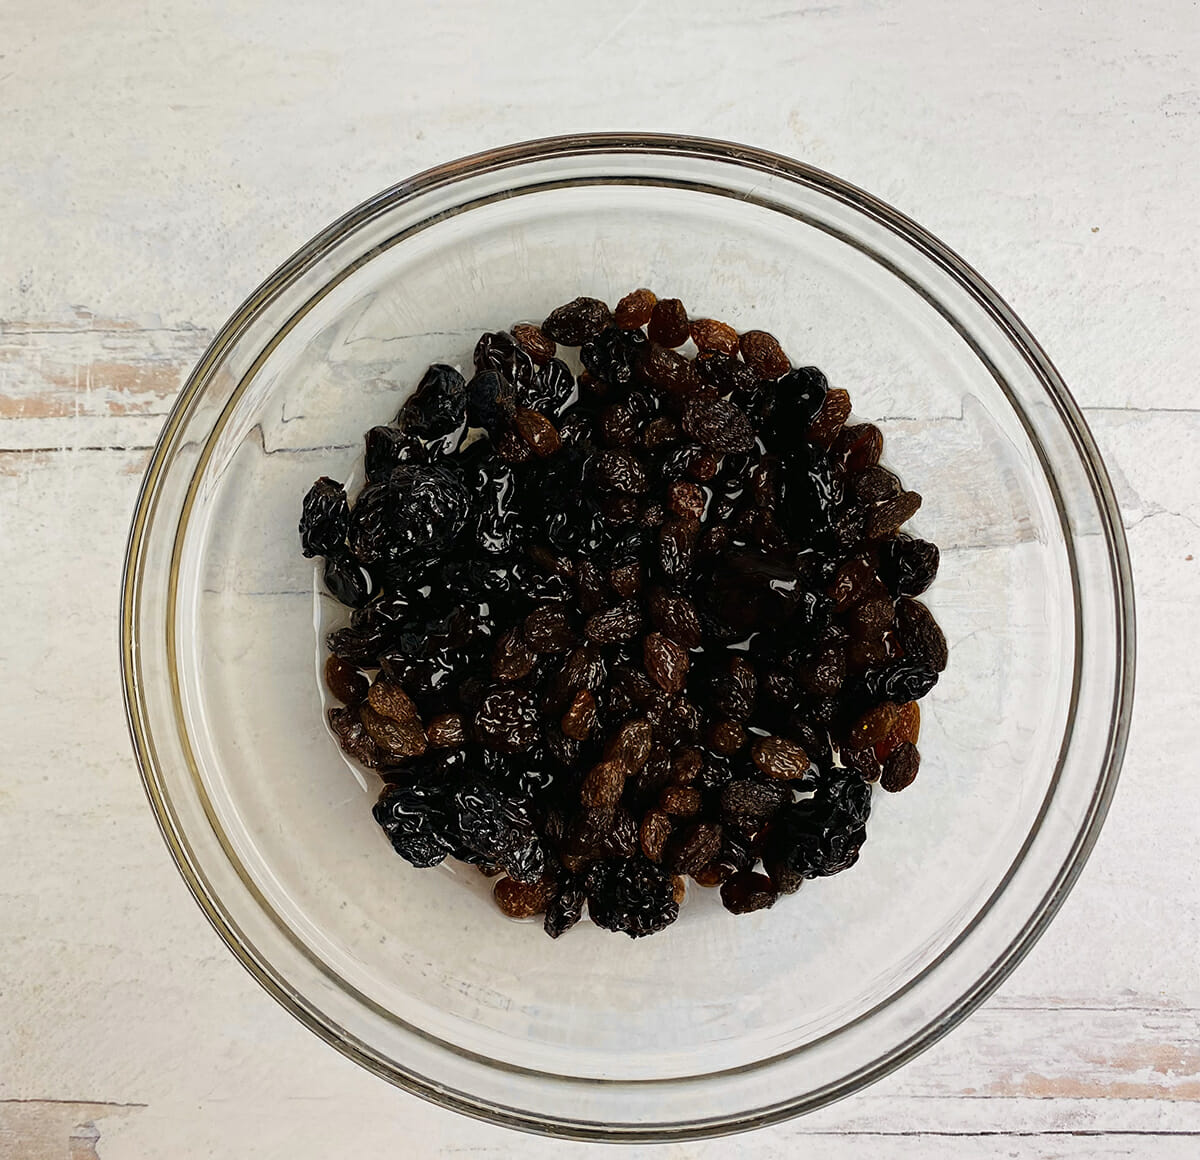 raisins soaking in rum